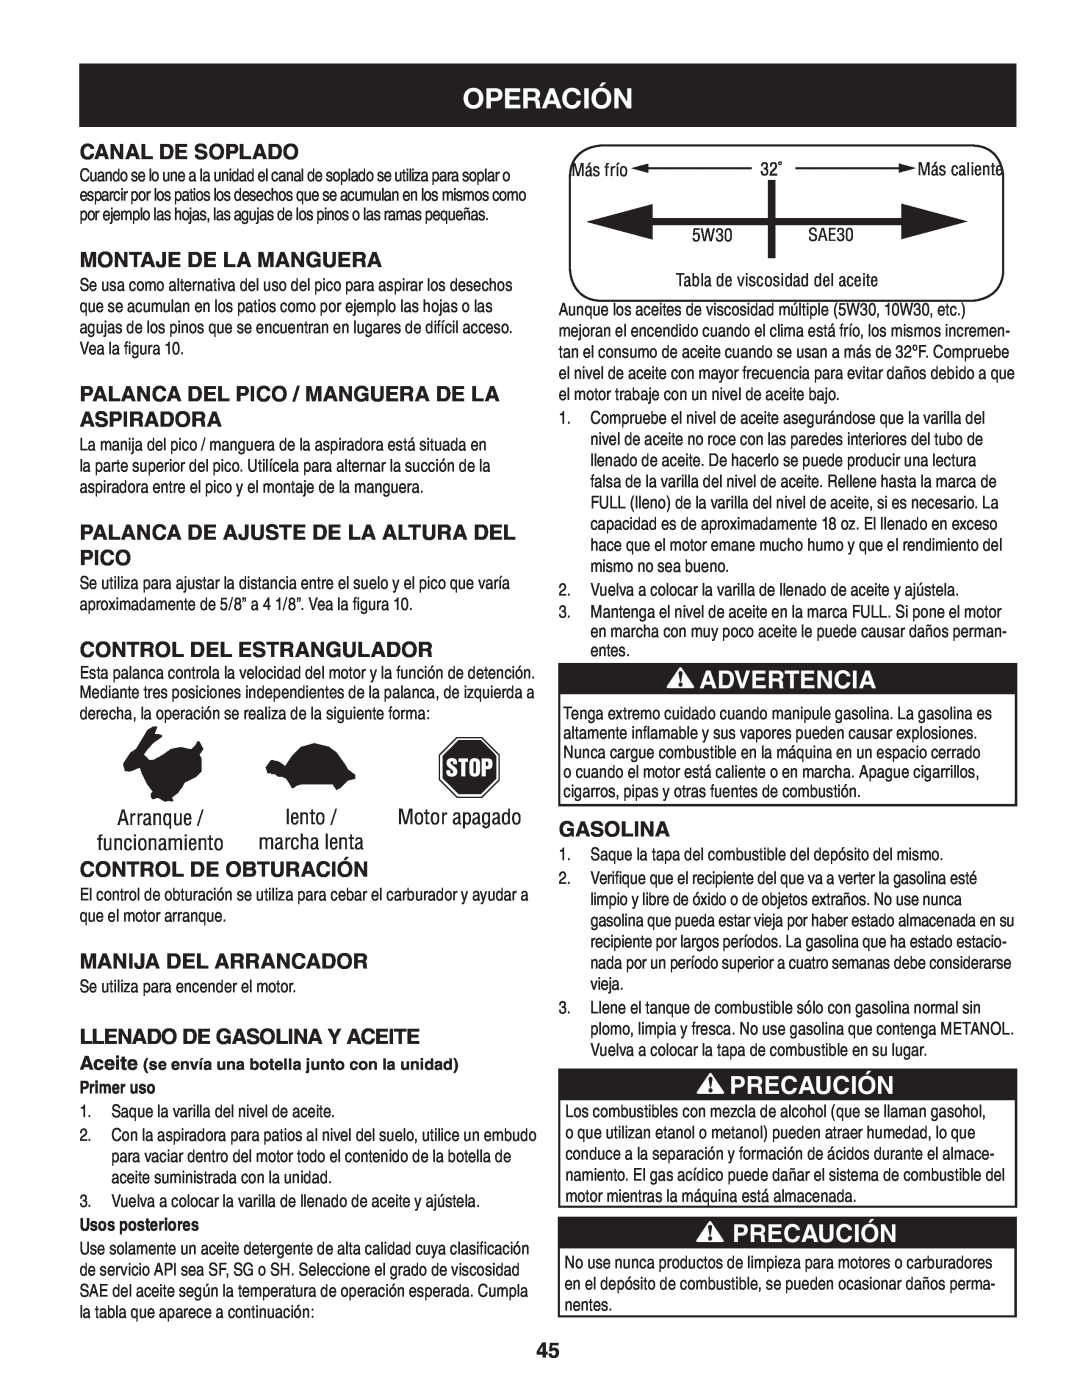 Craftsman 247.77013.0 manual Precaución, Operación, Advertencia, Stop, Canal de soplado, Montaje de la manguera, Gasolina 